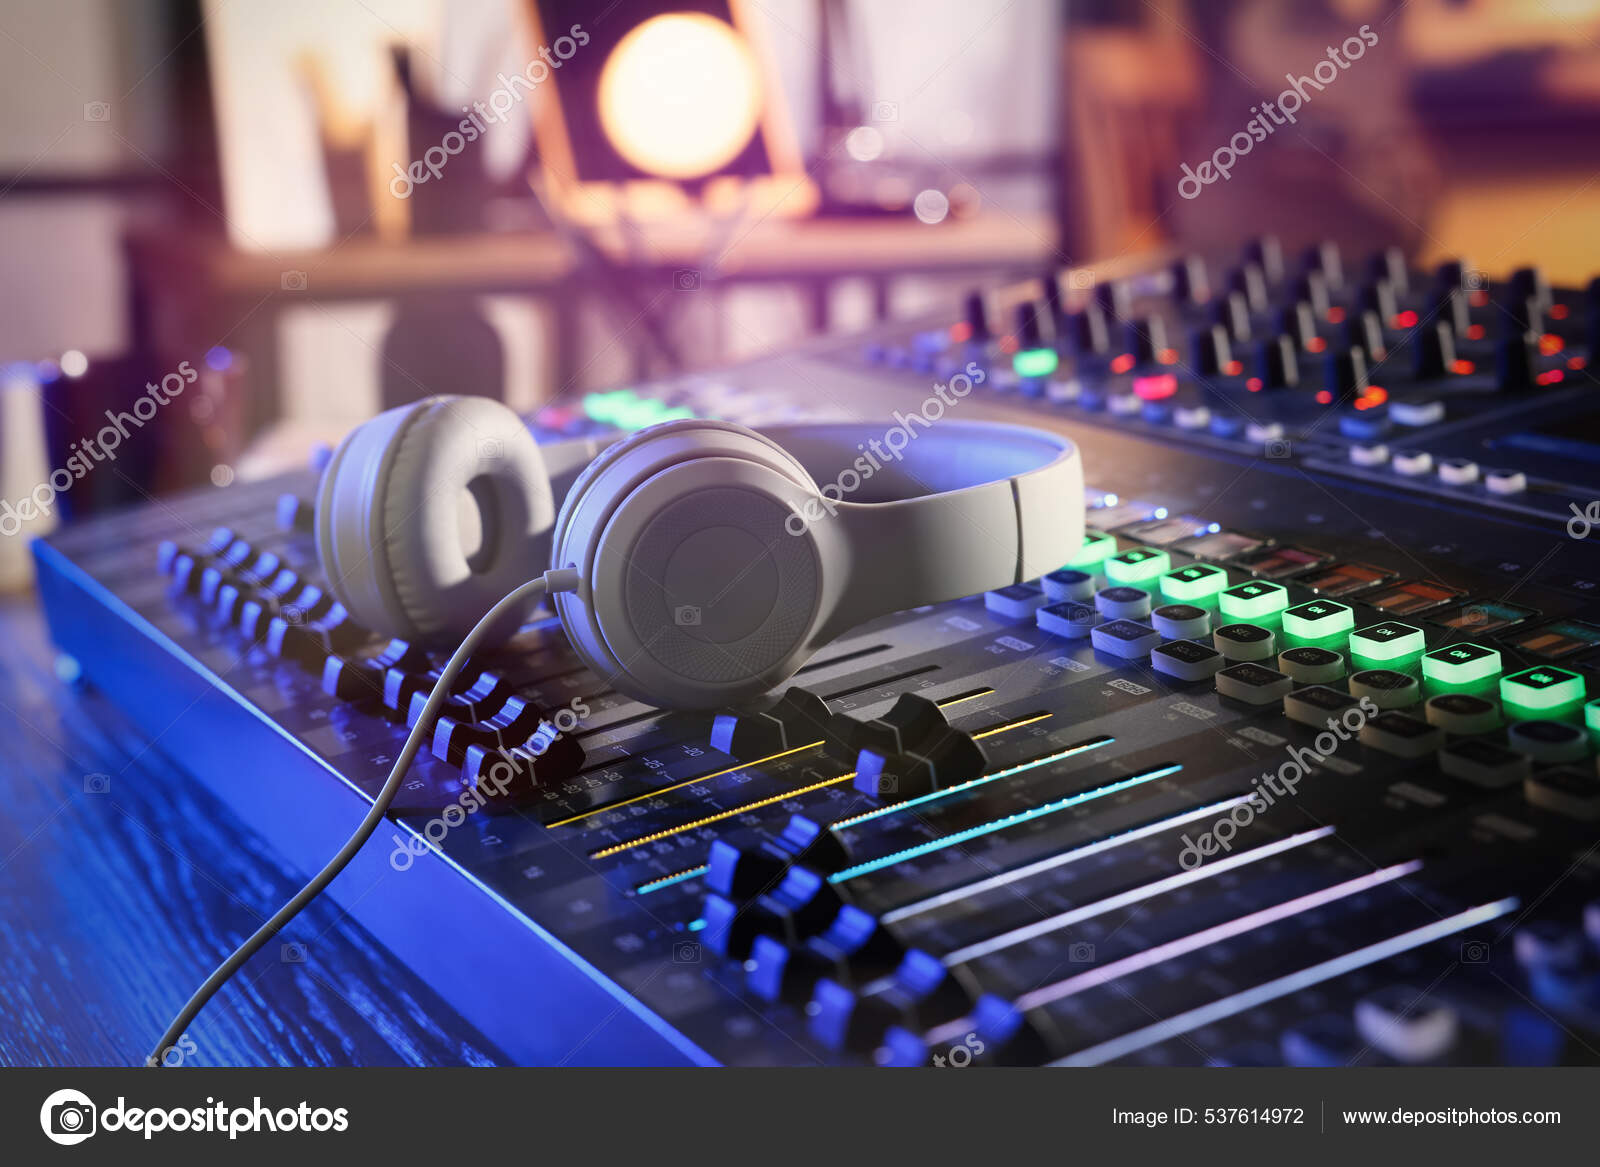 Table de mixage radio